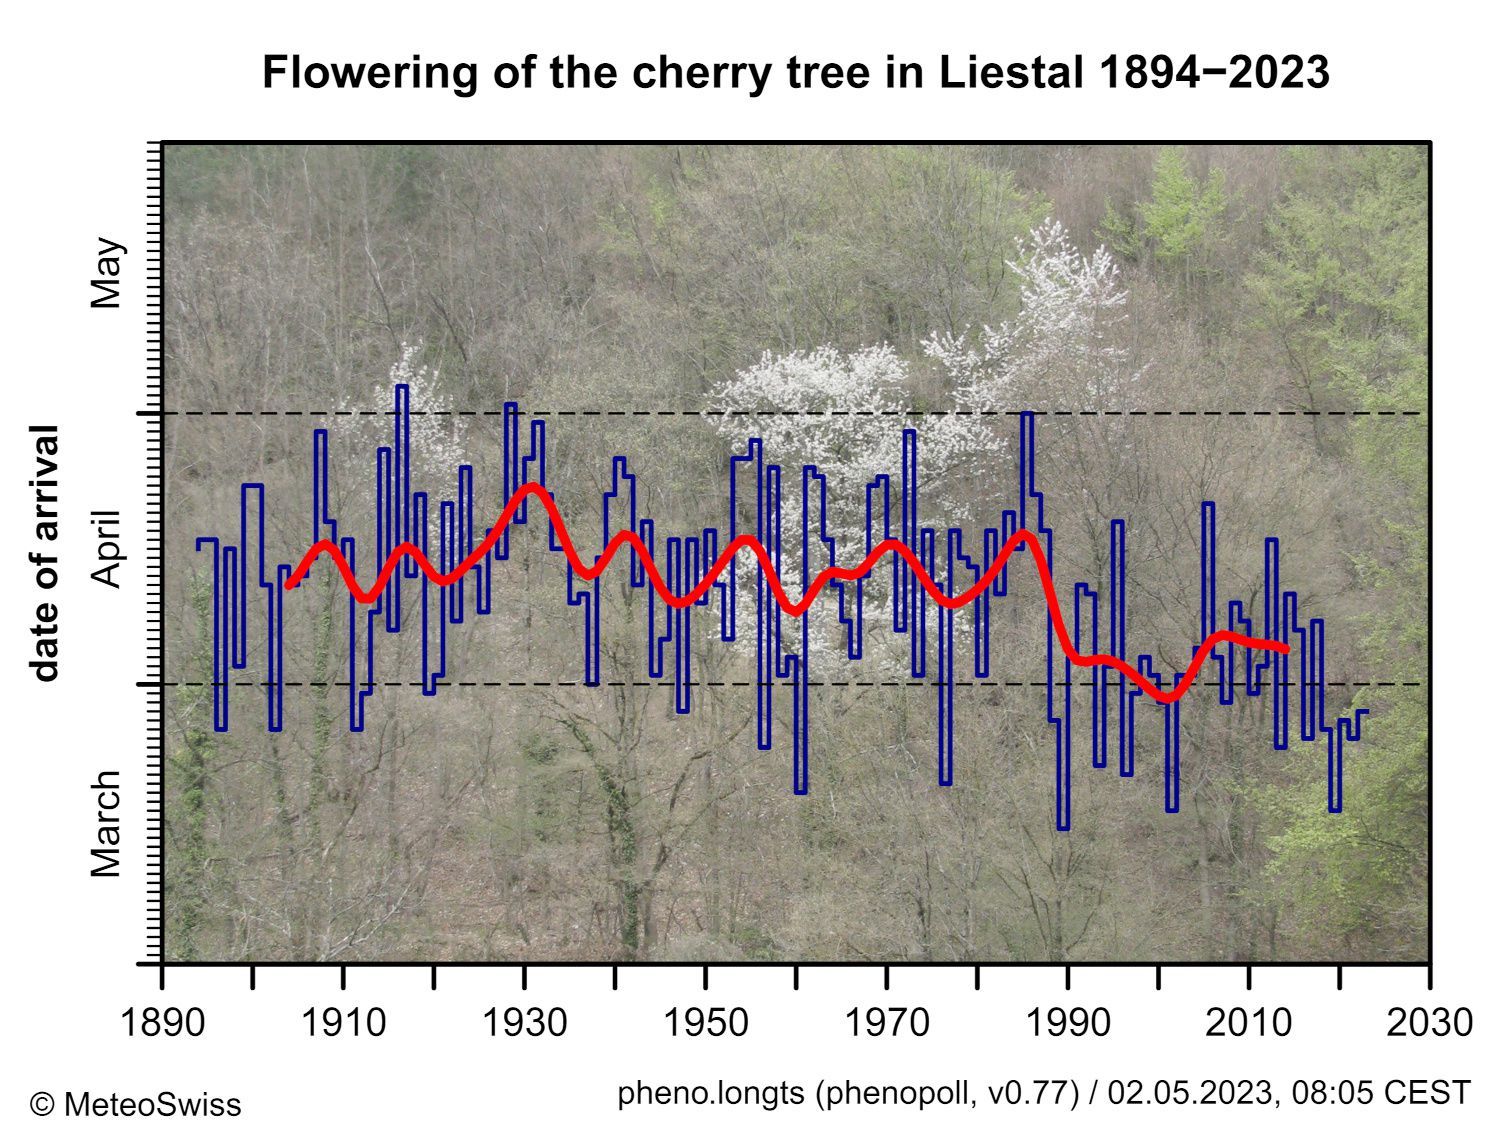 Floraison du cerisier à Liestal-Weideli depuis 1894. La ligne rouge indique la moyenne pondérée sur 20 ans (filtre passe-bas gaussien).